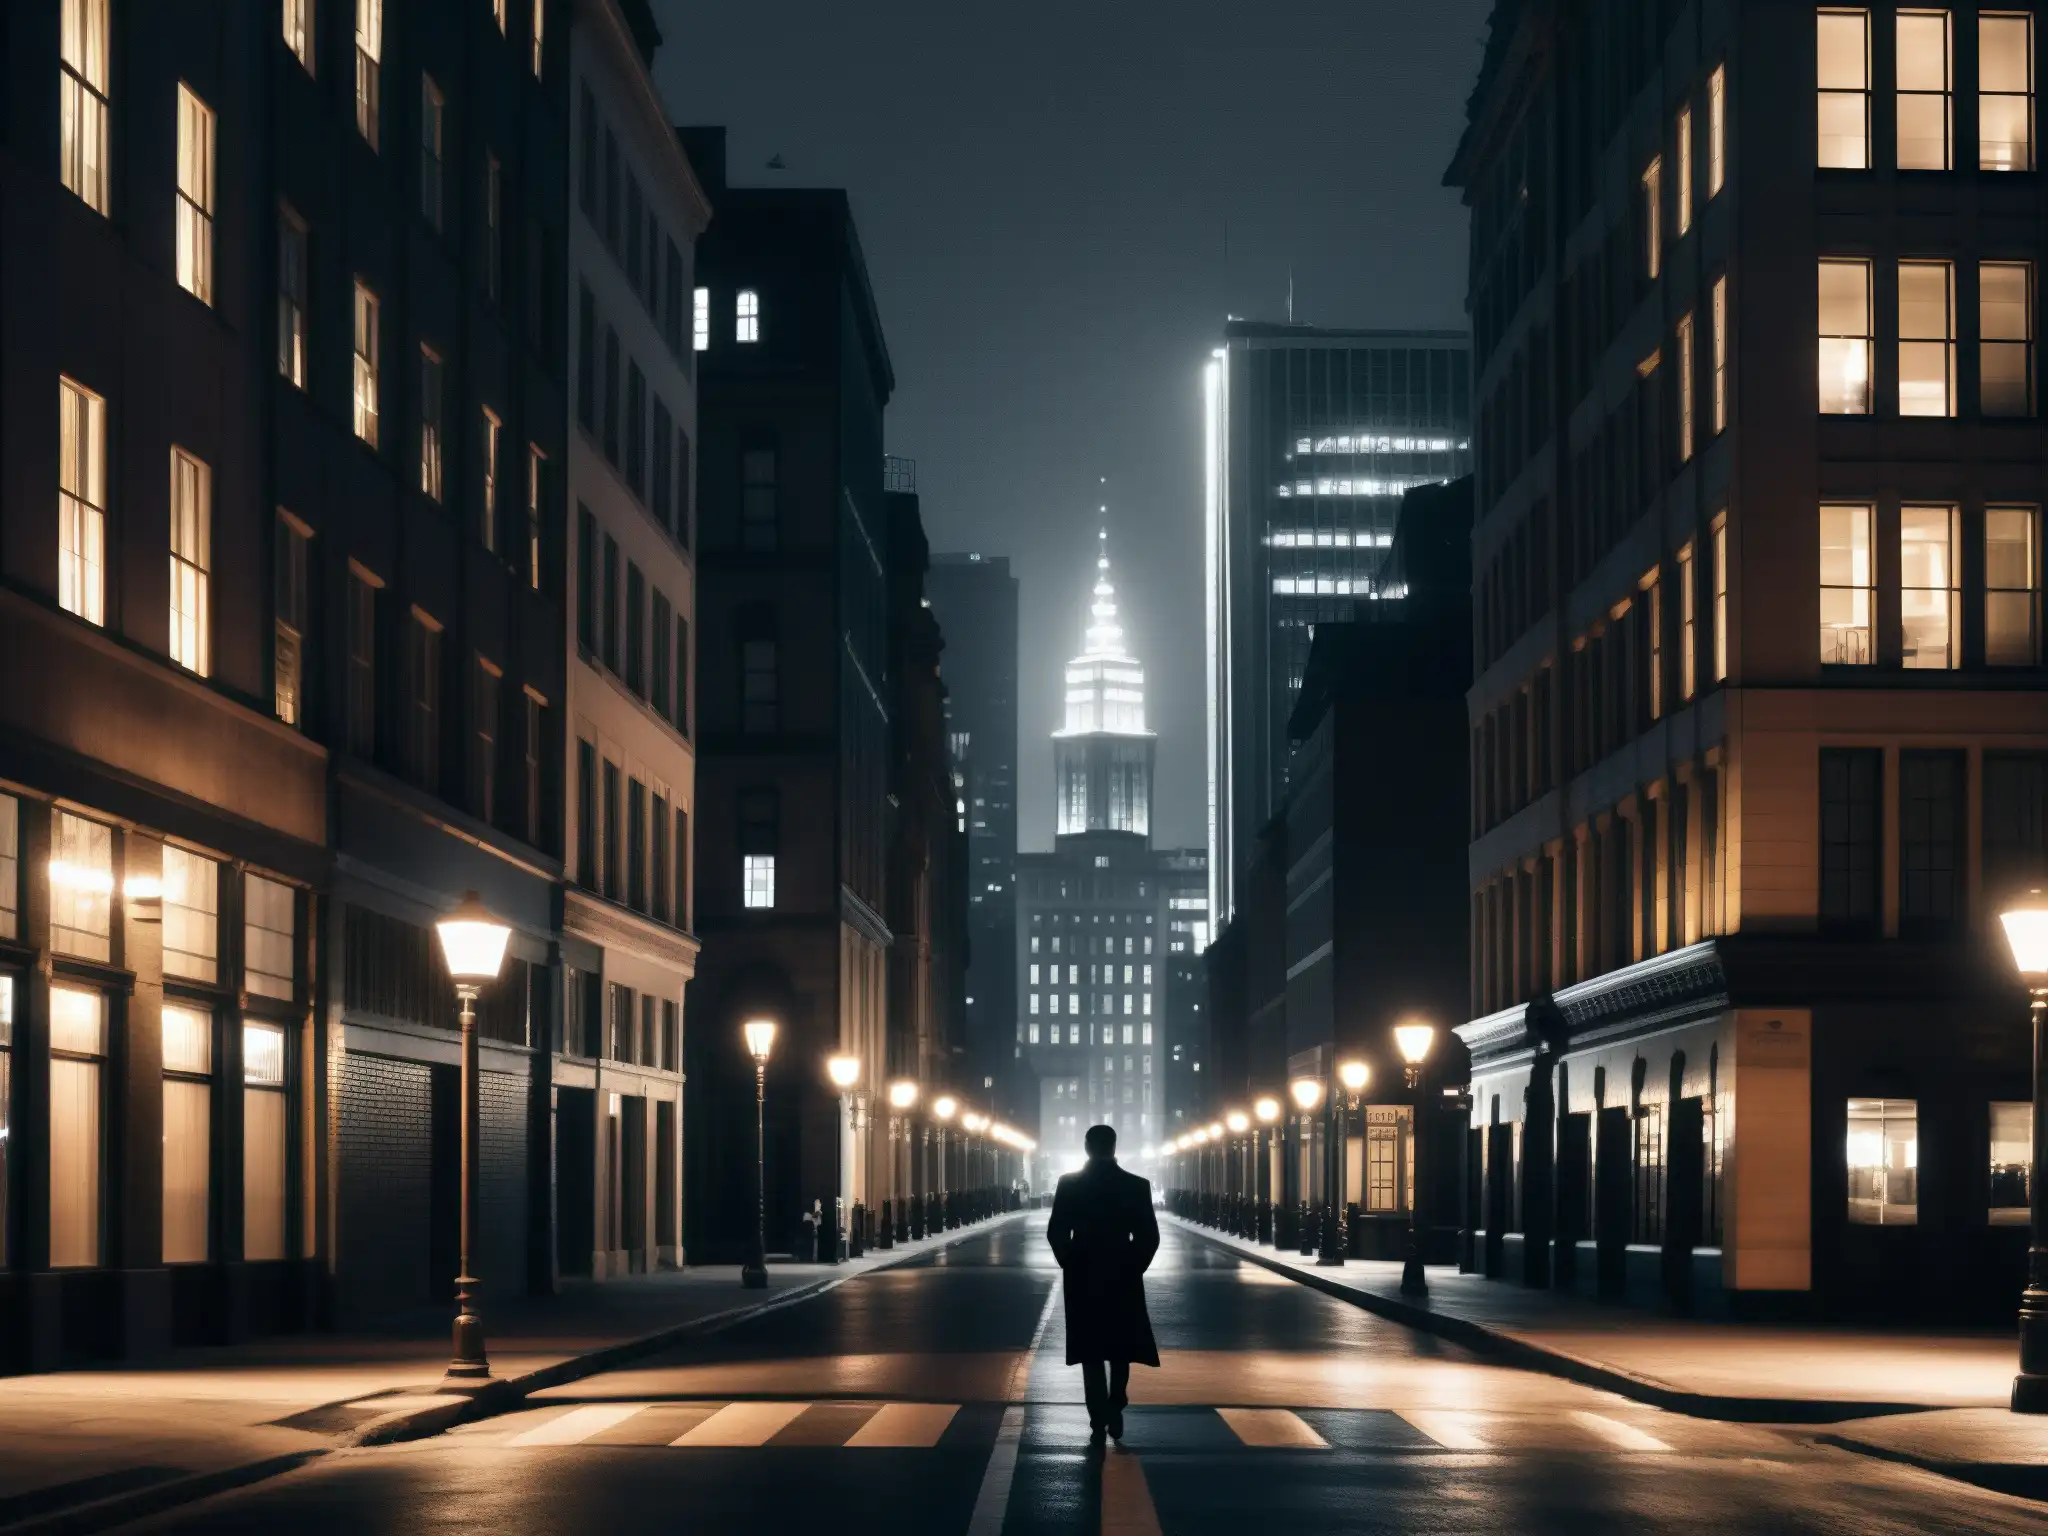 Una calle solitaria y sombría de la ciudad de noche, con edificios imponentes y una figura solitaria, evocando la relación leyendas urbanas depresión